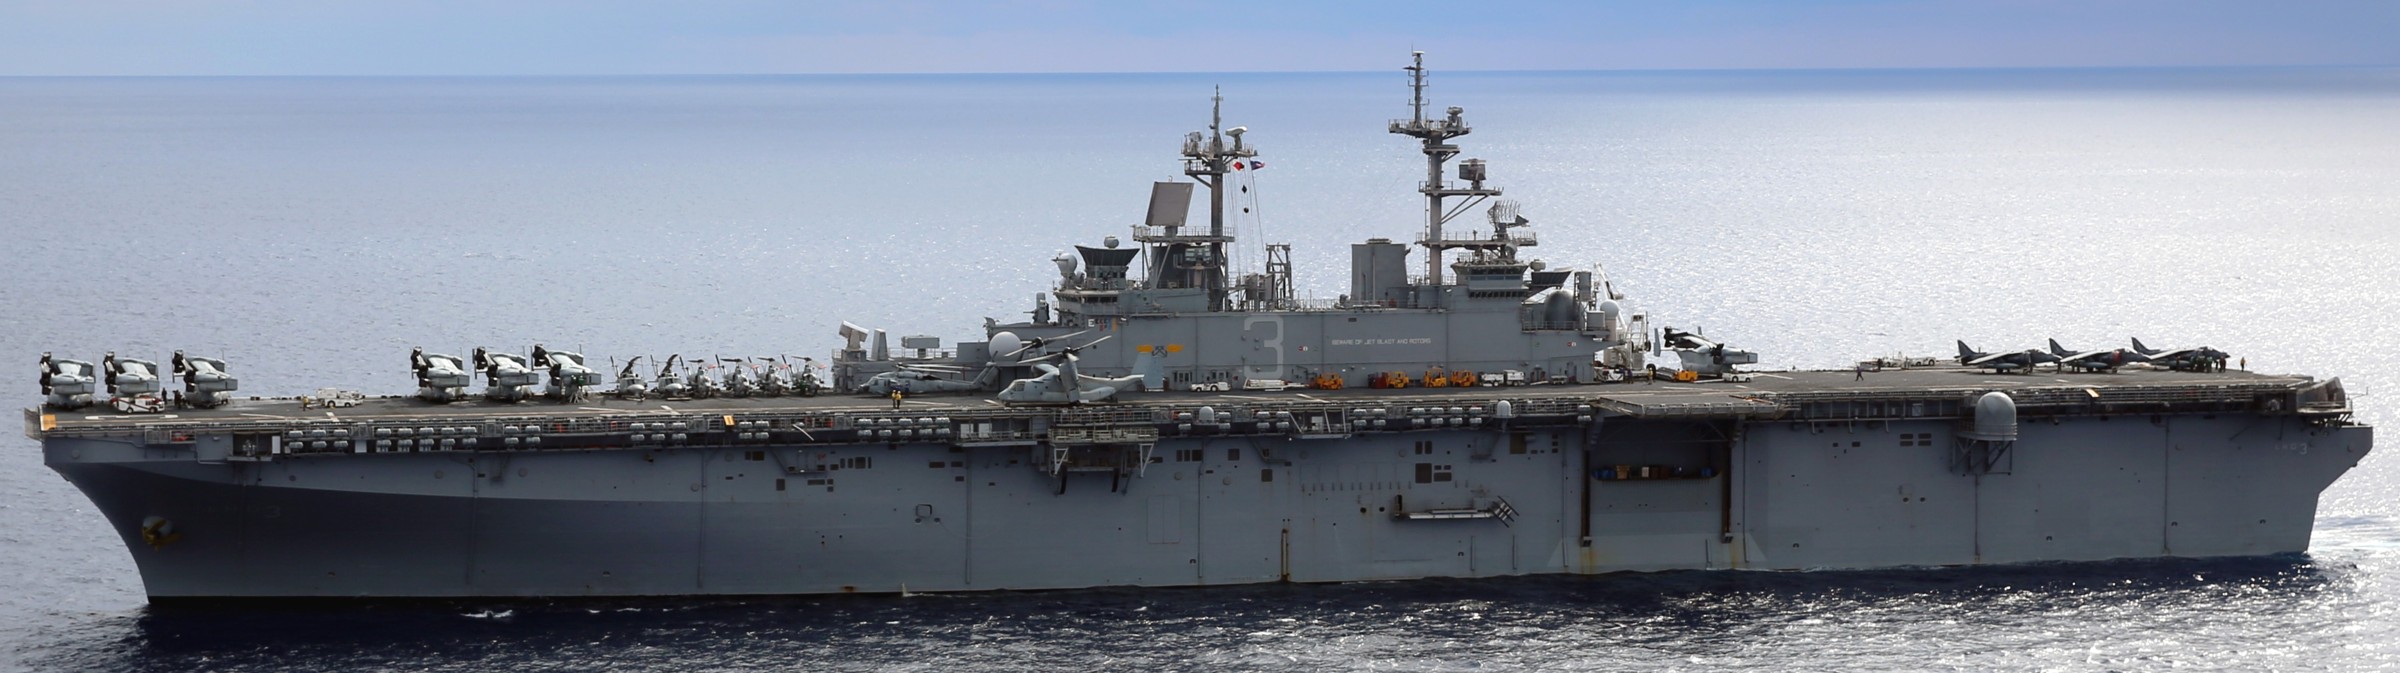 lhd-3 uss kearsarge wasp class amphibious assault ship us navy marines vmm-266 comptuex 94